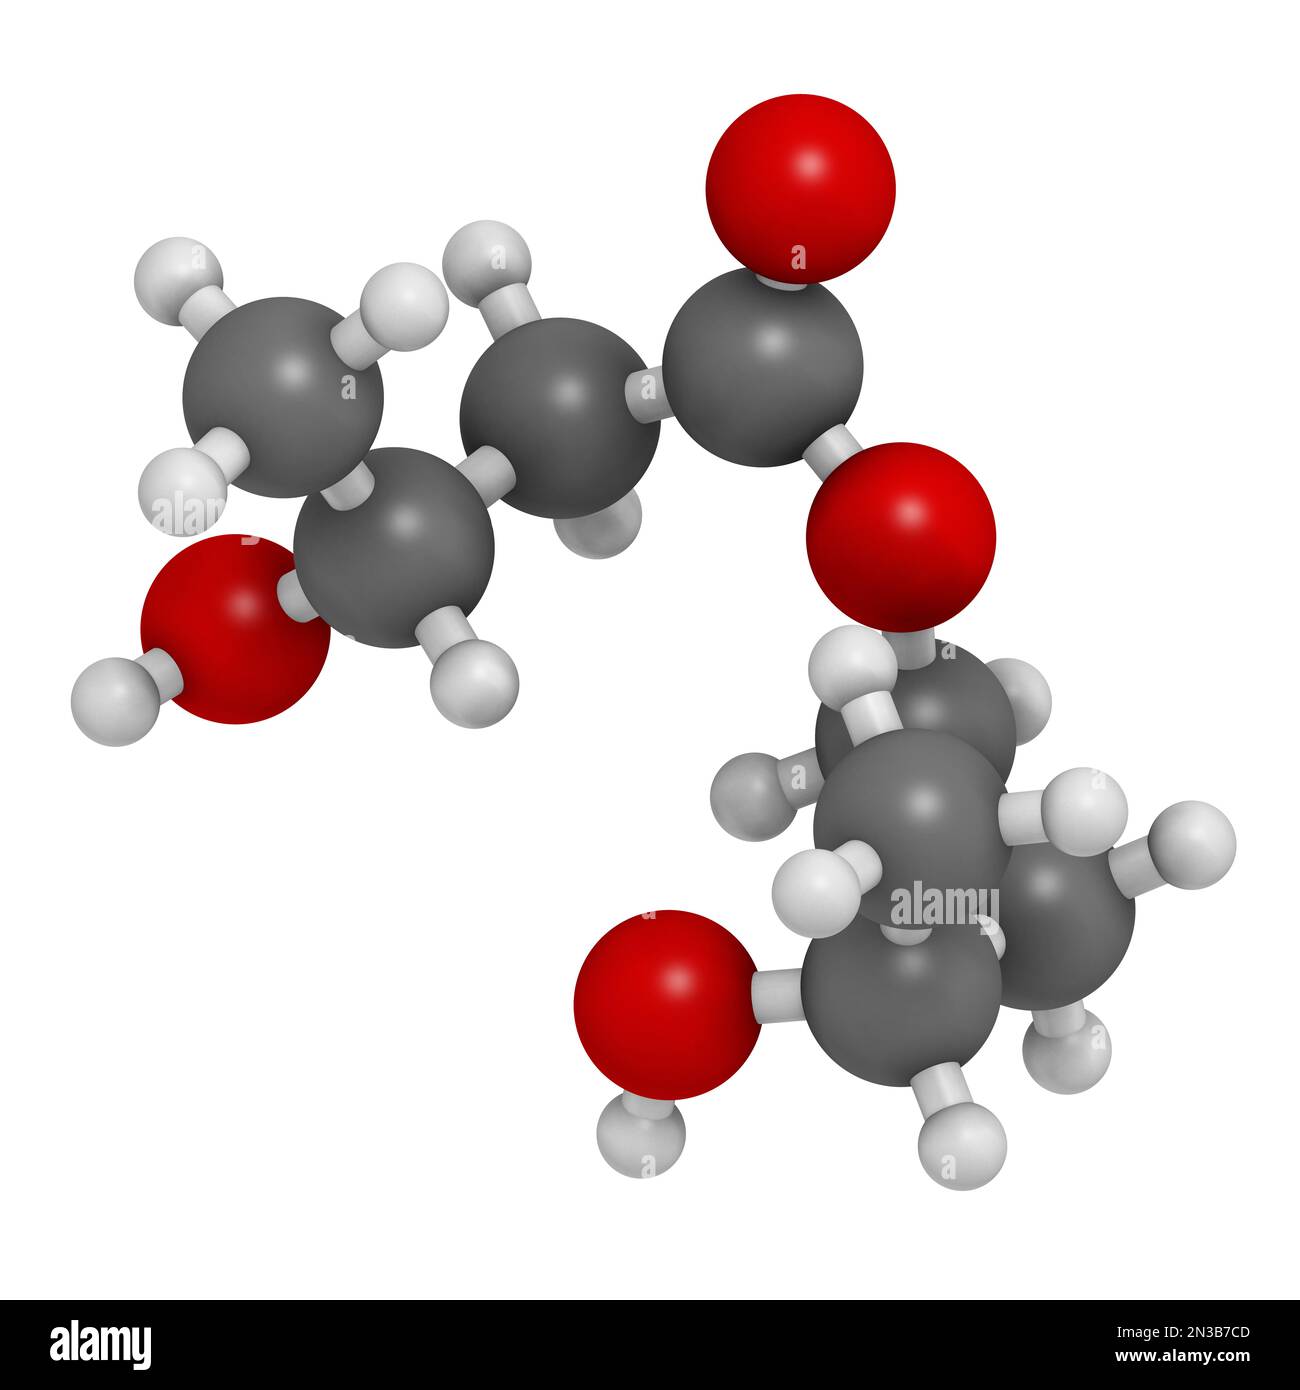 β-hydroxybutyrate-(R)-1,3-butanediol monoester (ketone ester) molecule. Used as food and sports supplement. 3D rendering. Atoms are represented as sph Stock Photo